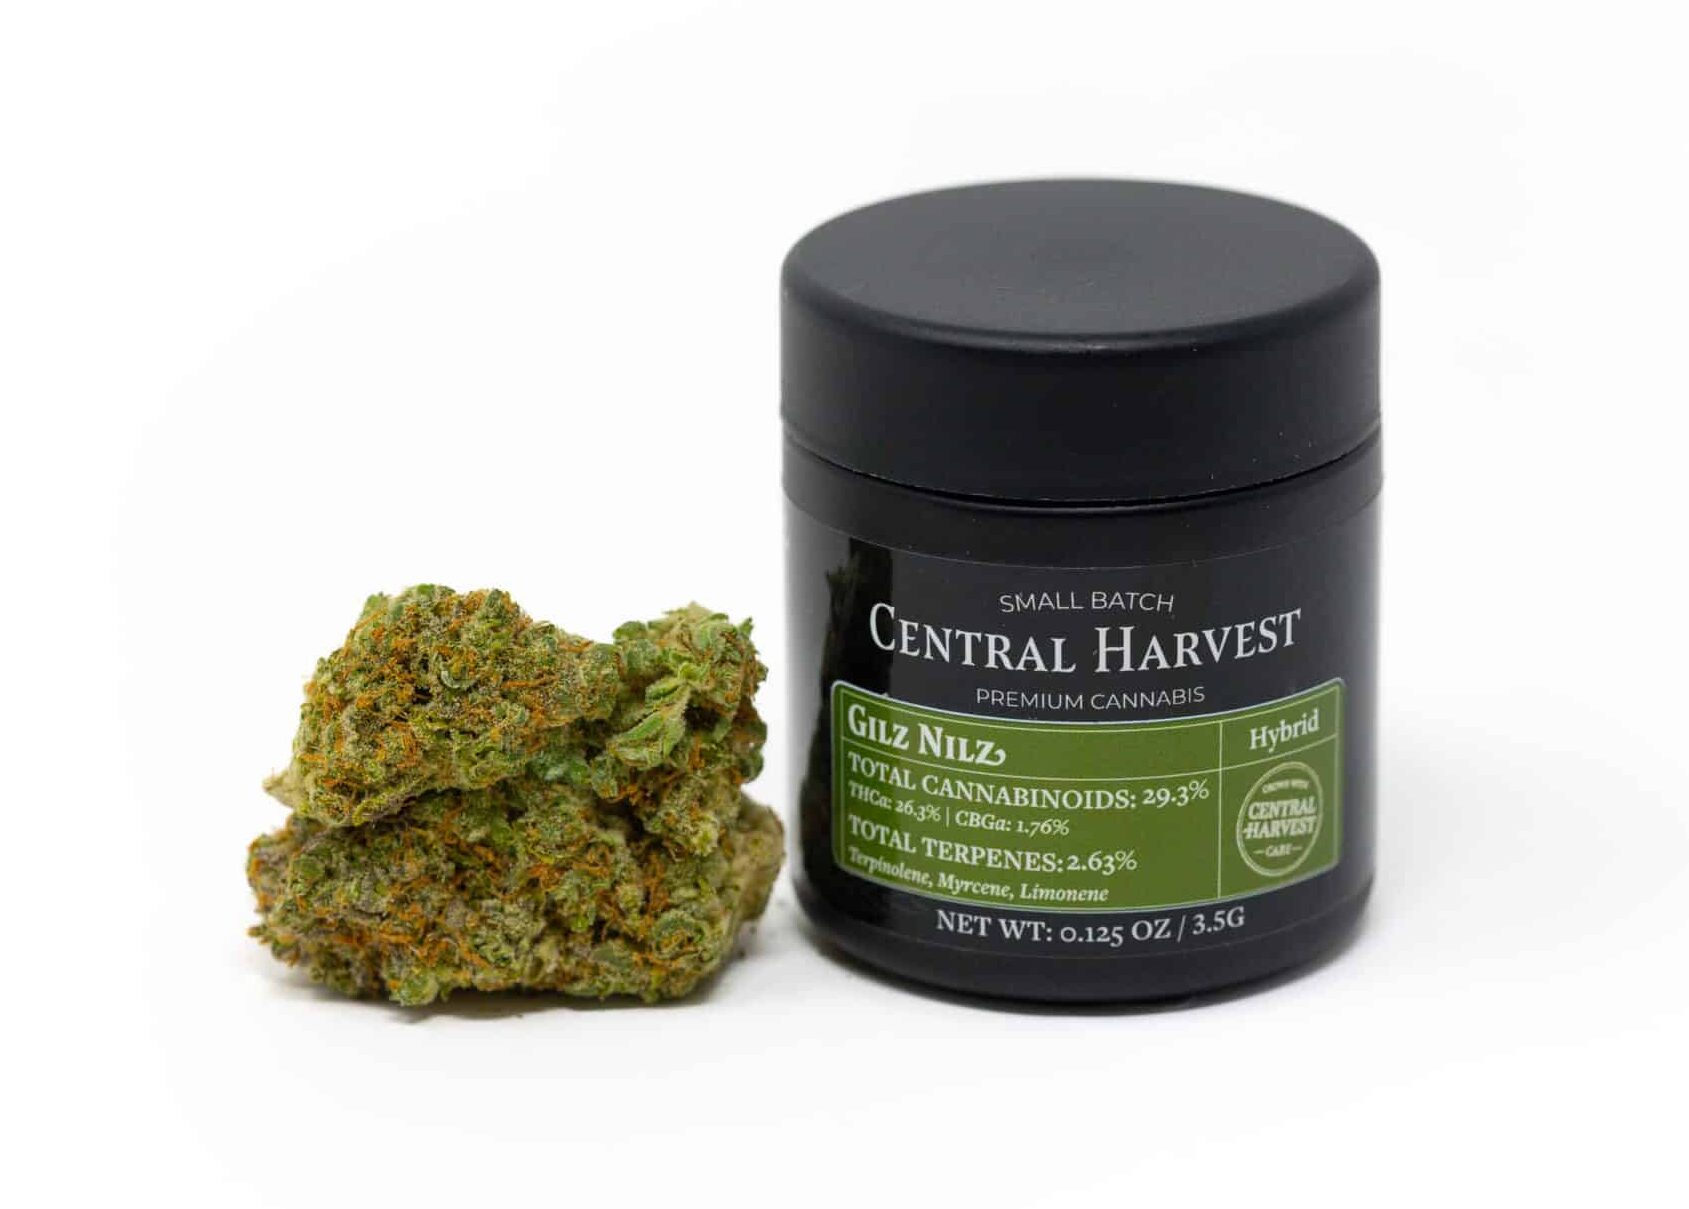 Gilz Nilz is a Hybrid Cannabis strain grown by Central Harvest